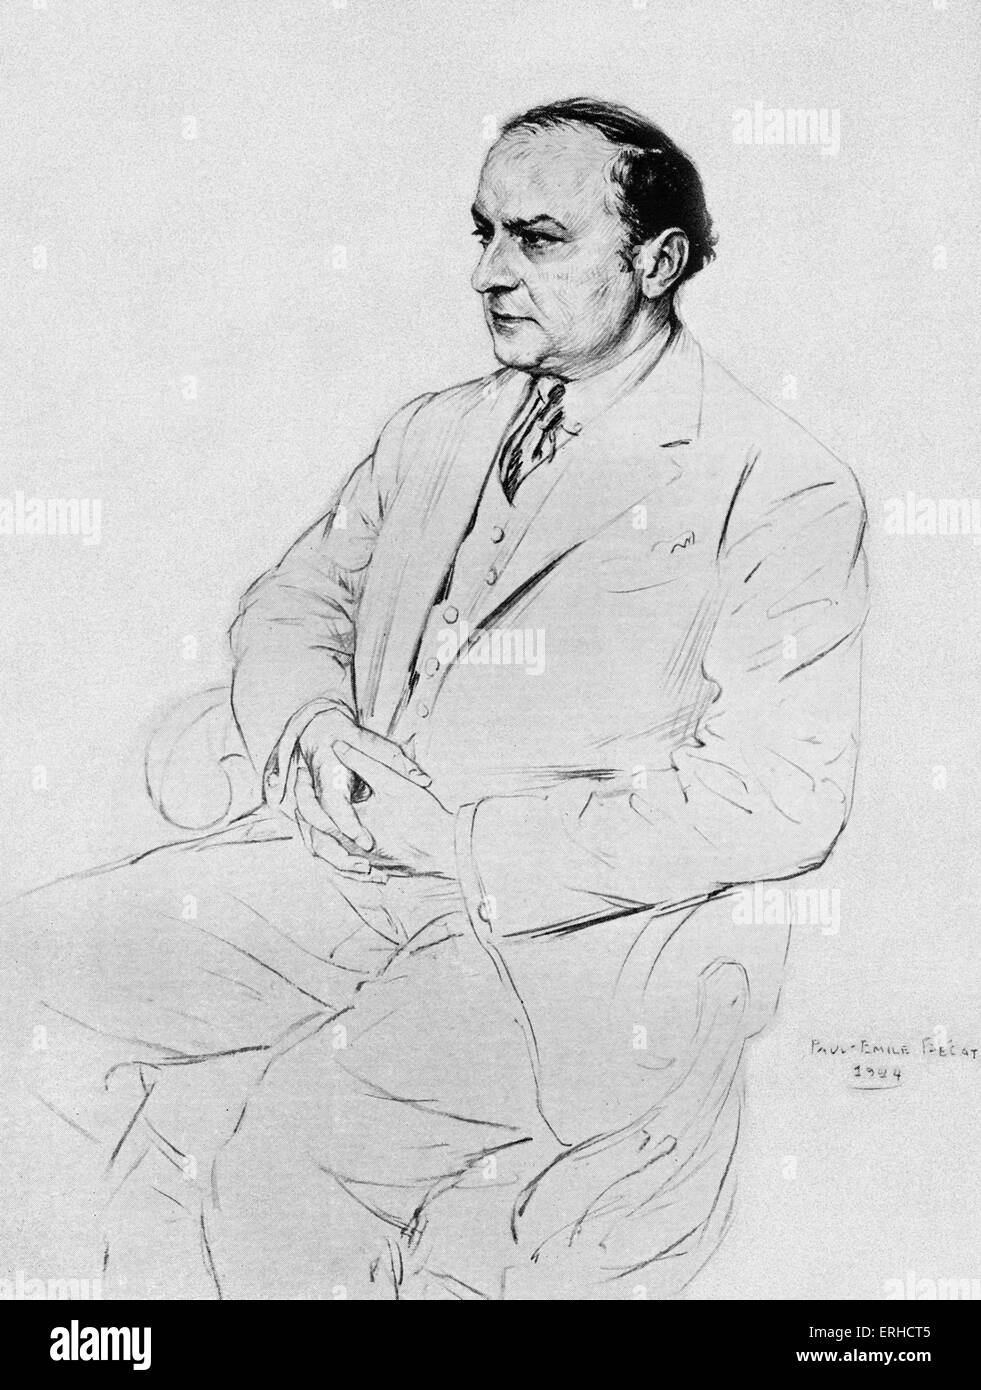 Léon-Paul Fargue, portrait. Poète et essayiste français, 4 mars 1876 - 24 novembre 1947. Après l'illustration par Paul-Émile Banque D'Images